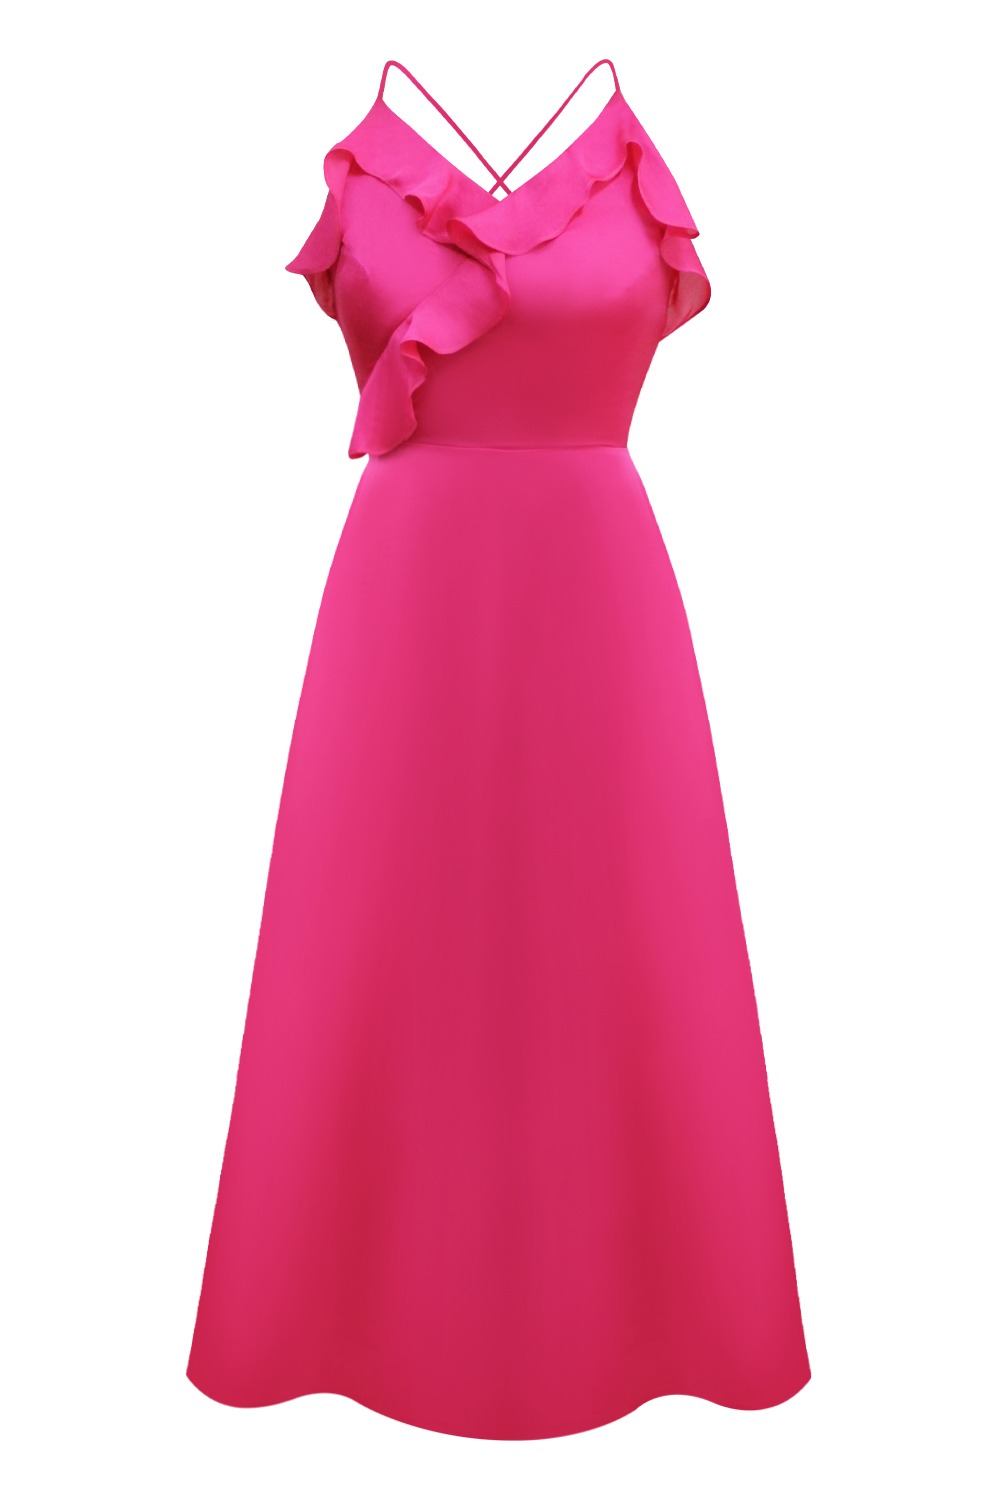 Alexis silky slip dress (Hot pink)